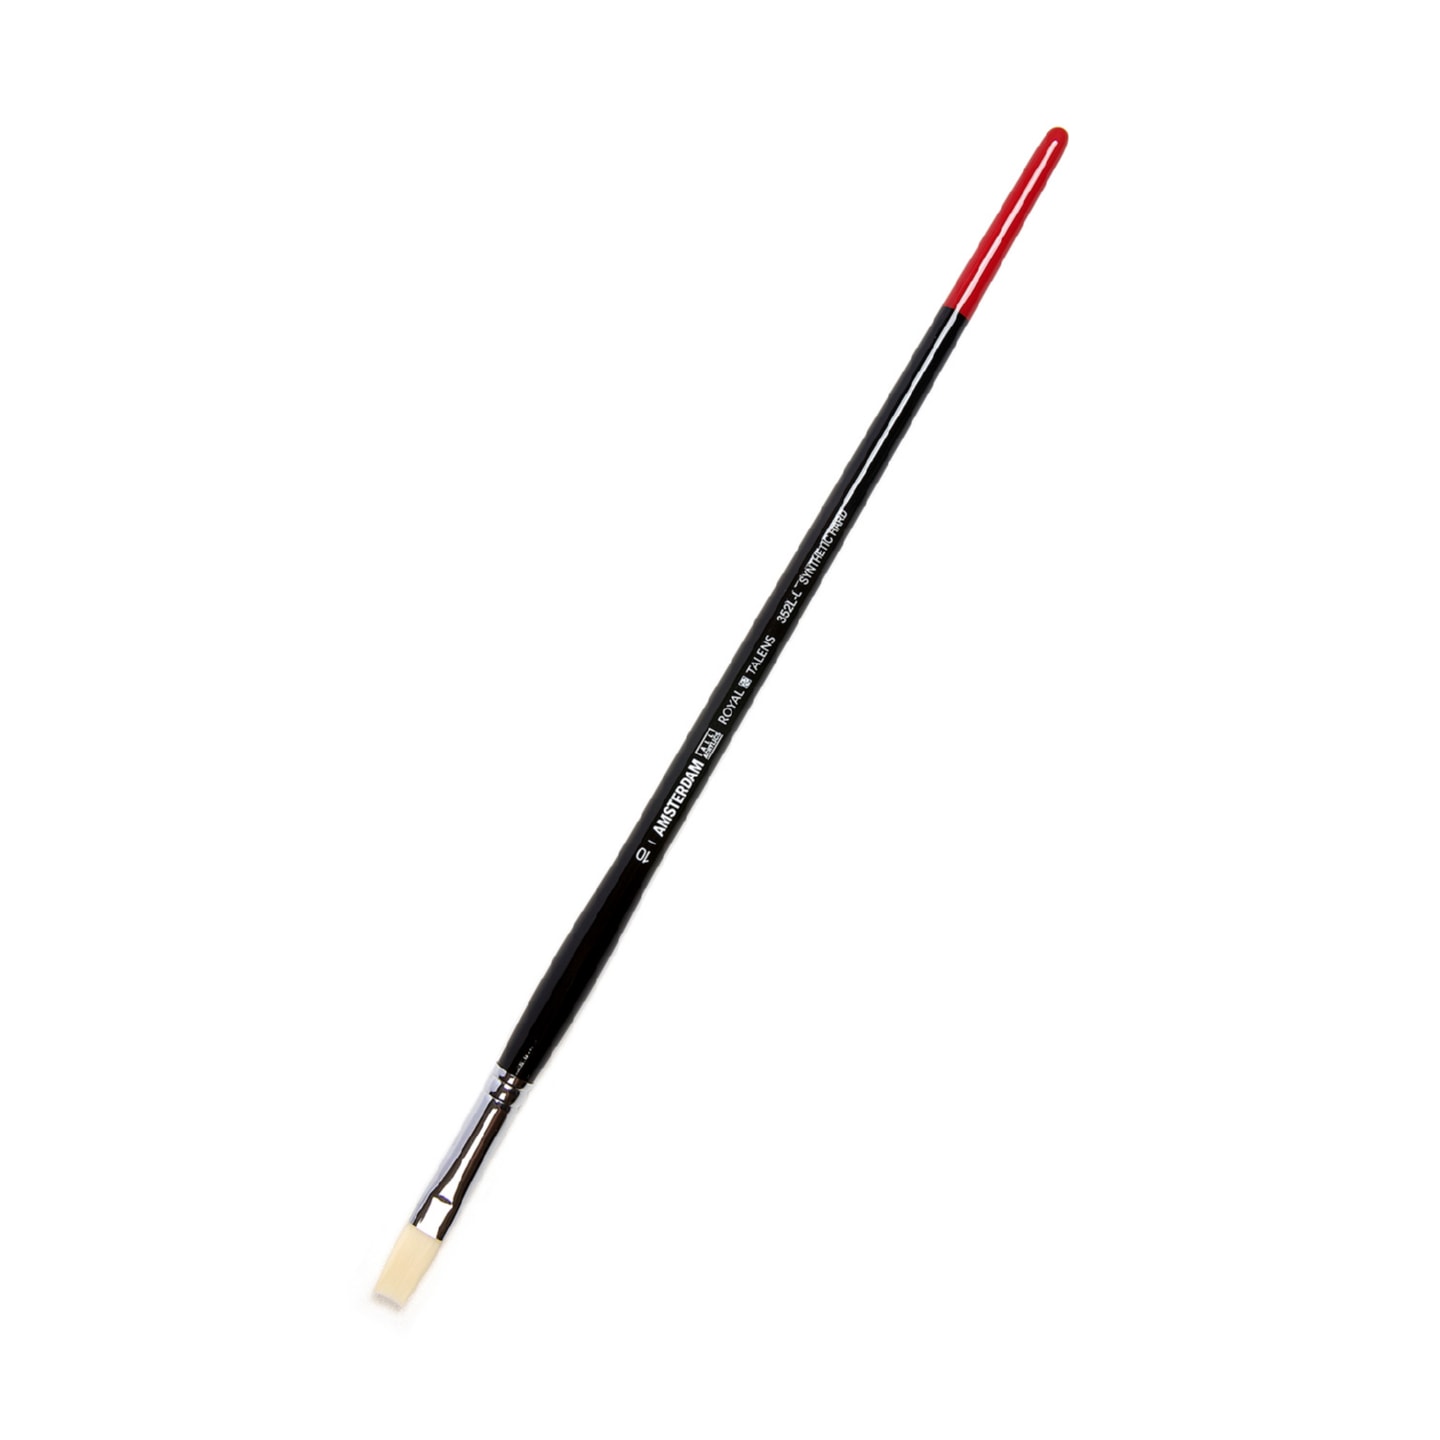 Кисть для акрила Amsterdam 352L жесткая синтетика плоская удлиненная ручка длинная 5 шт/упак 6 размеров в ассортименте